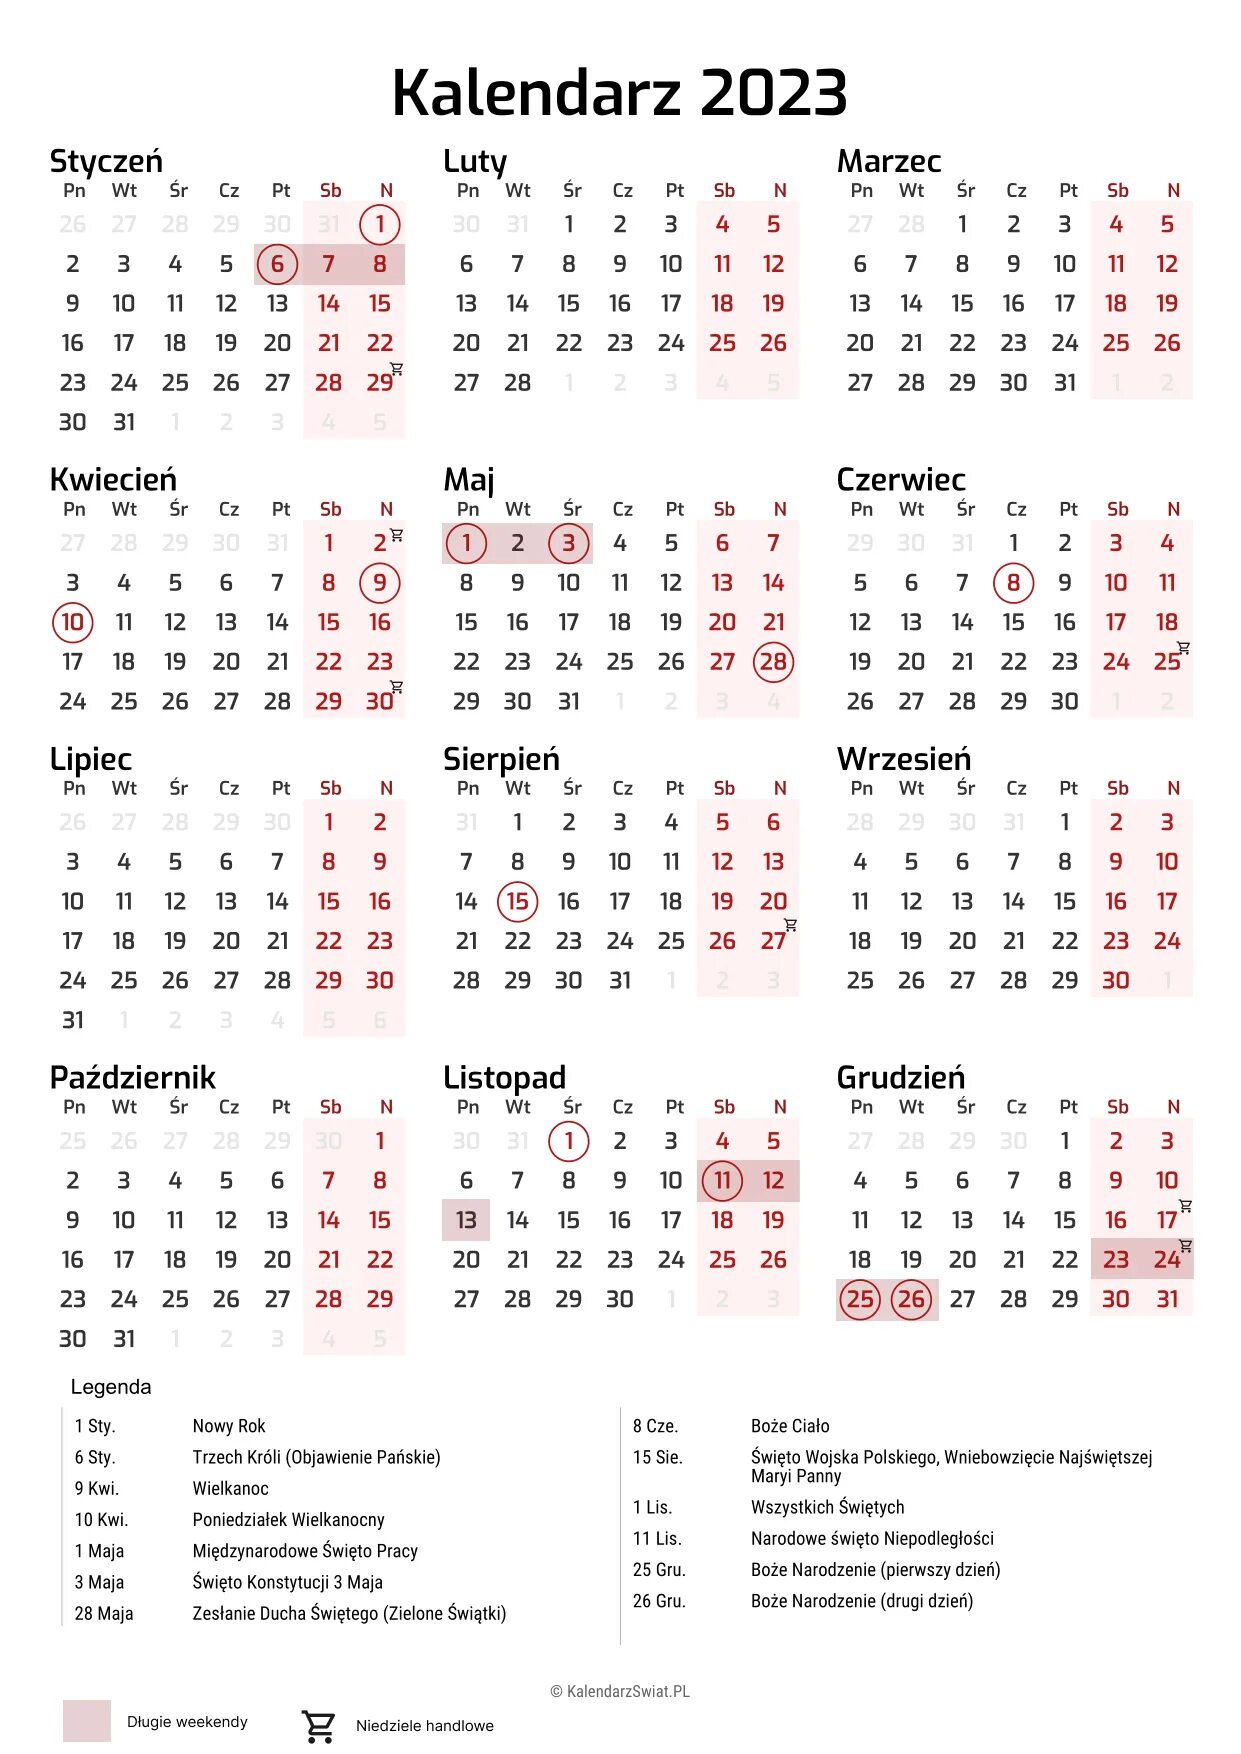 Выходные в польше в марте. Праздничные дни в Польше. Польский календарь праздников. Календарь праздников в Польше. Праздничные дни в Польше 2023.